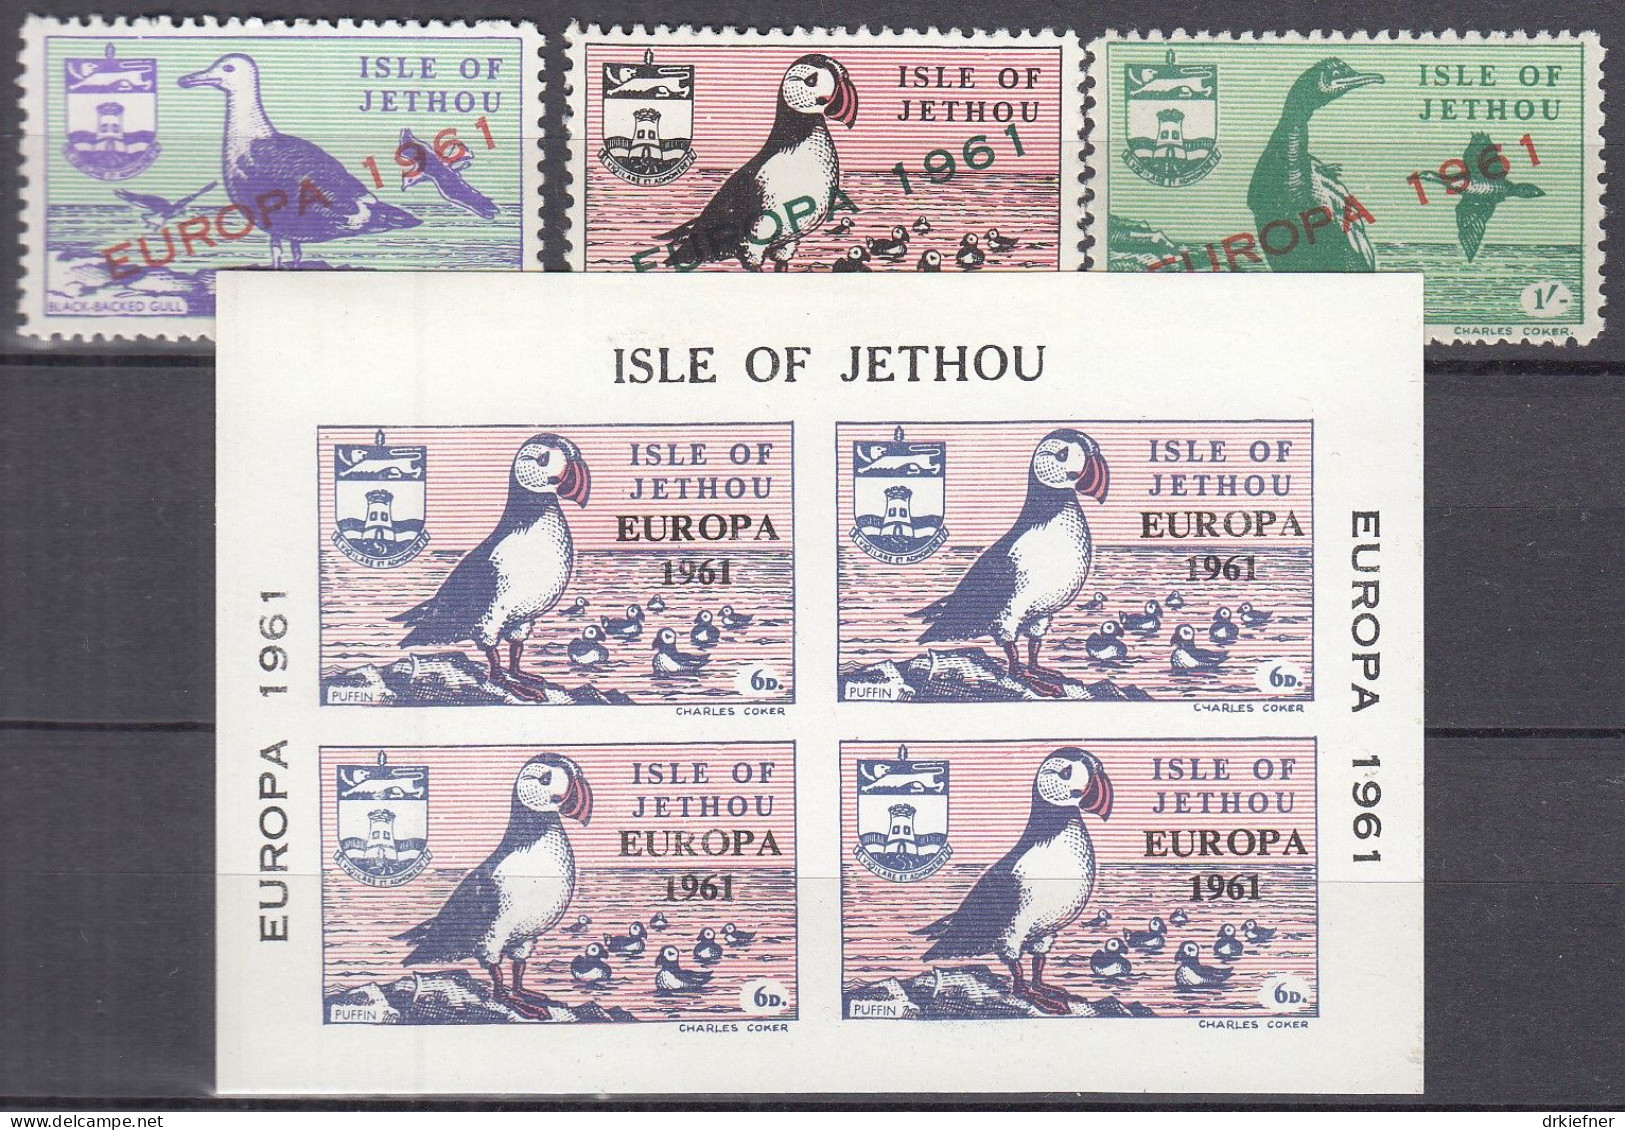 INSEL JETHOU (Guernsey), Nichtamtl. Briefmarken, 1 Block + 3 Marken, Postfrisch **, Europa 1961, Vögel - Guernsey